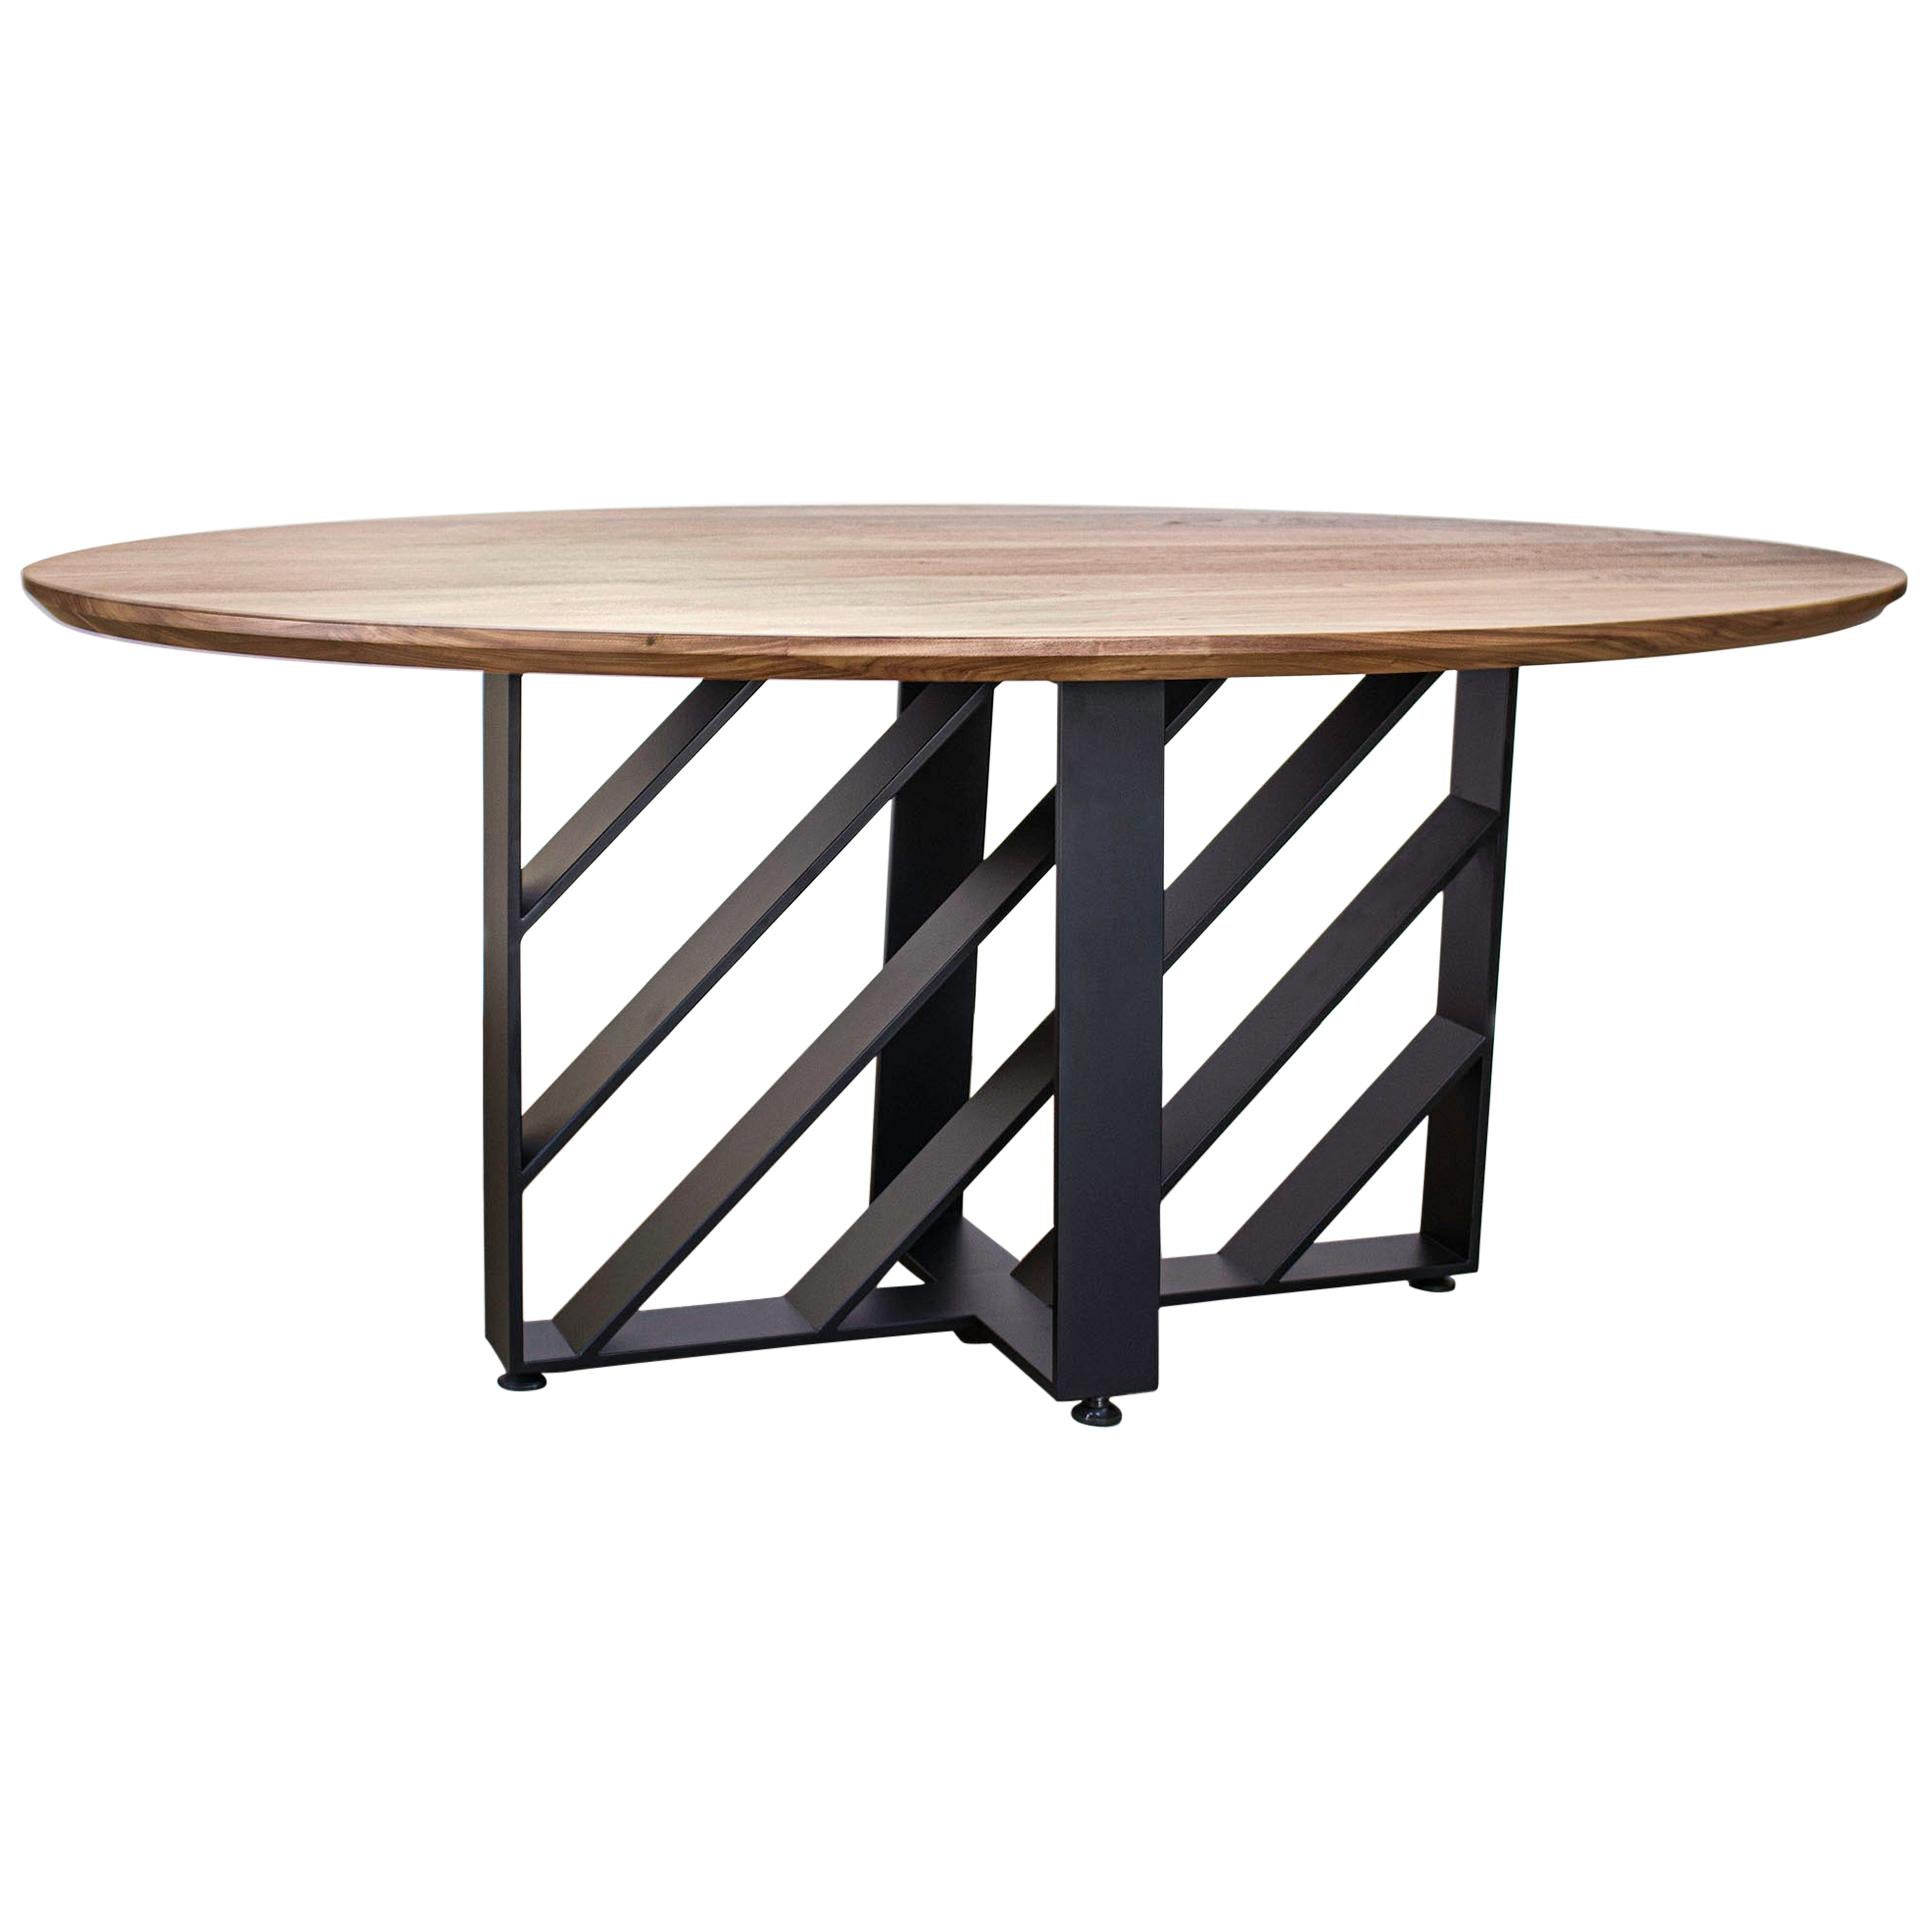 Oval Dining Table, Blackened Steel, Hardwood, Modern, Custom, Semigood For Sale